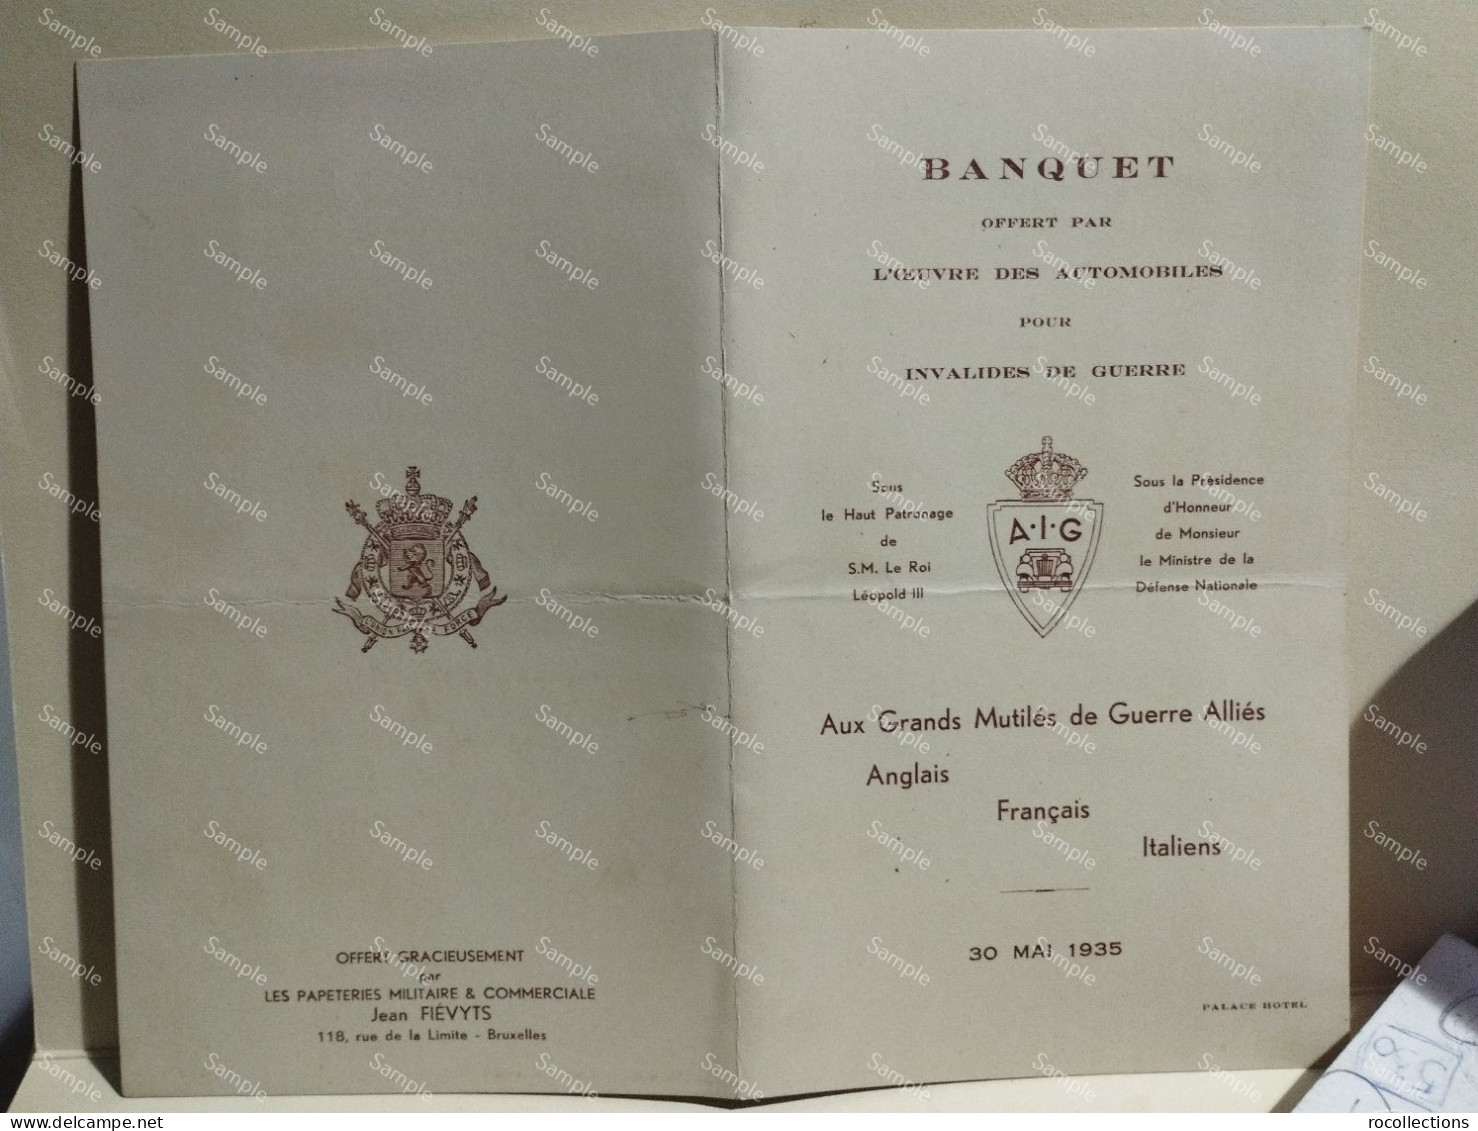 France Menù Programme BANQUET Invalides De Guerre Annglais Francais Italiens 30 Mai 1935 Palace Hotel Bruxelles. Signed - Menükarten